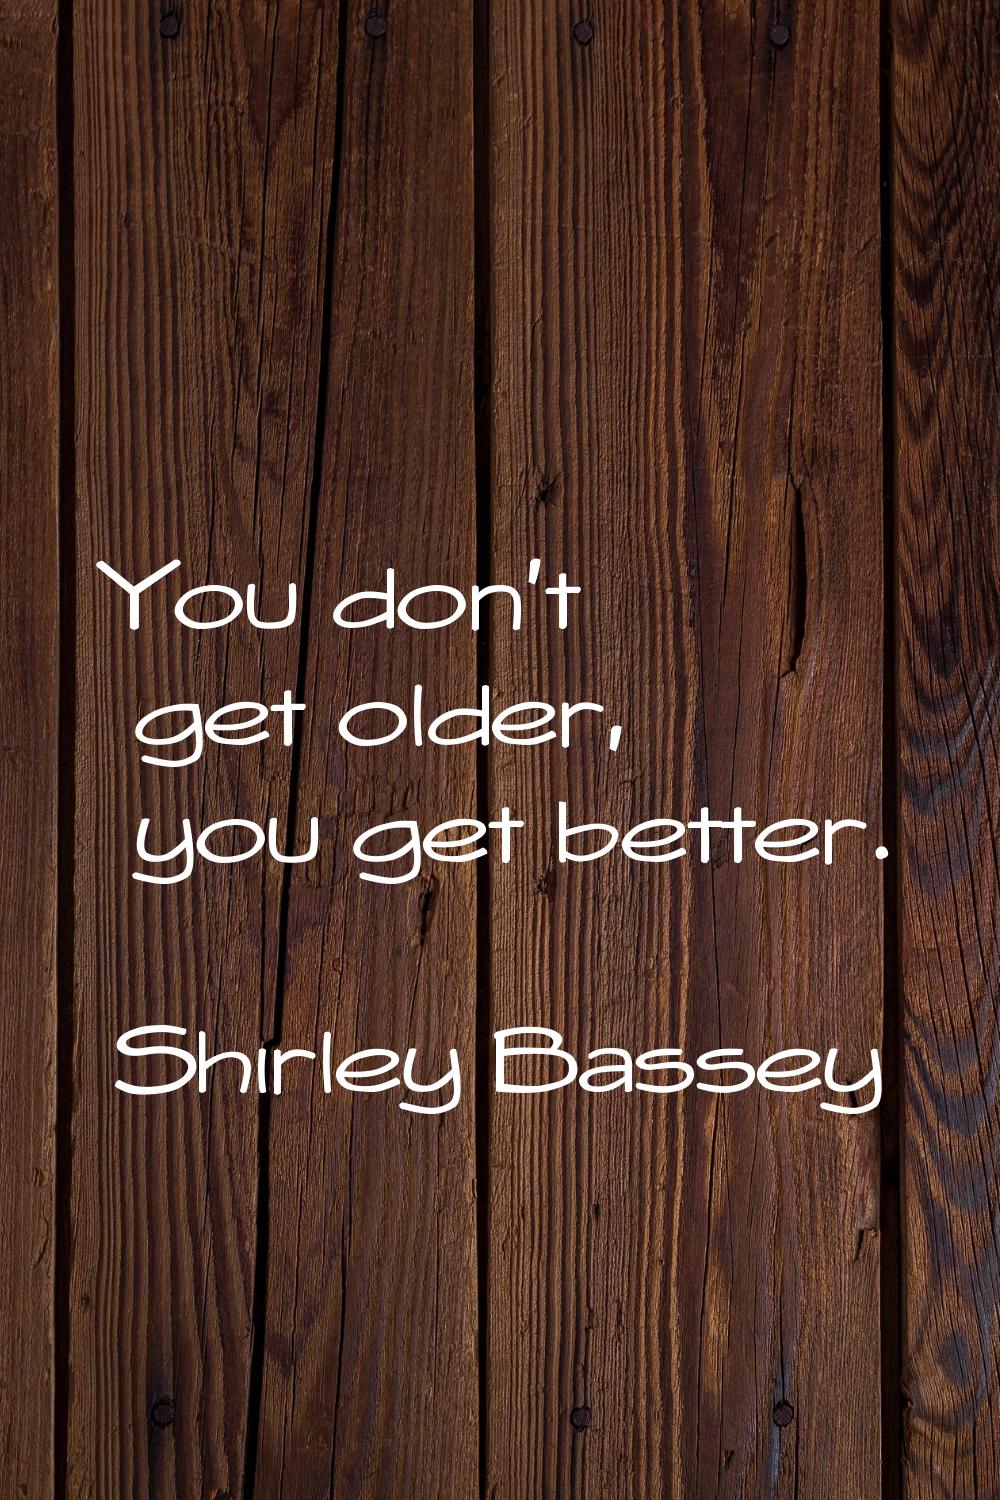 You don't get older, you get better.